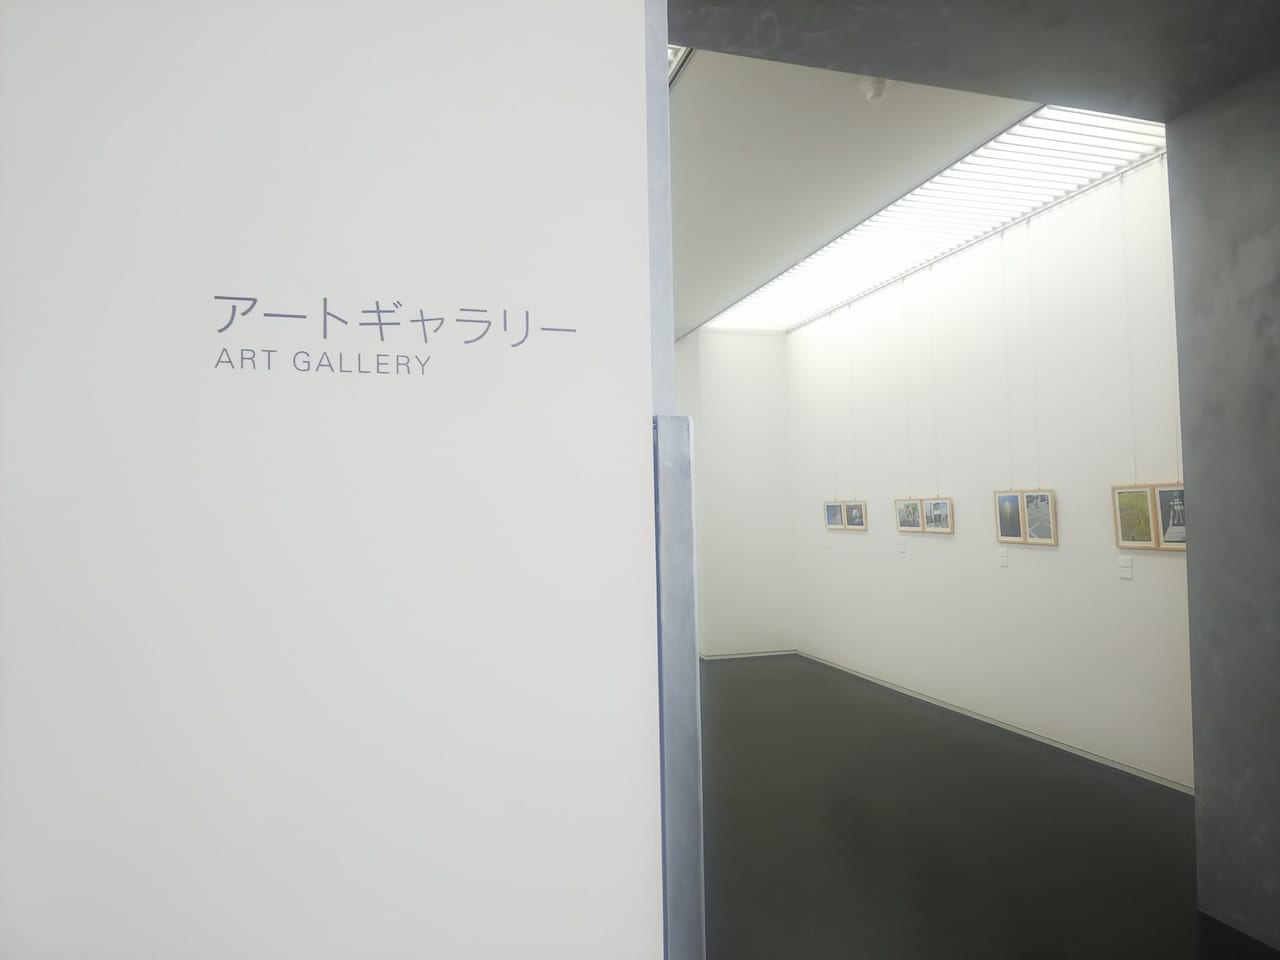 東広島市立美術館2階アートギャラリー